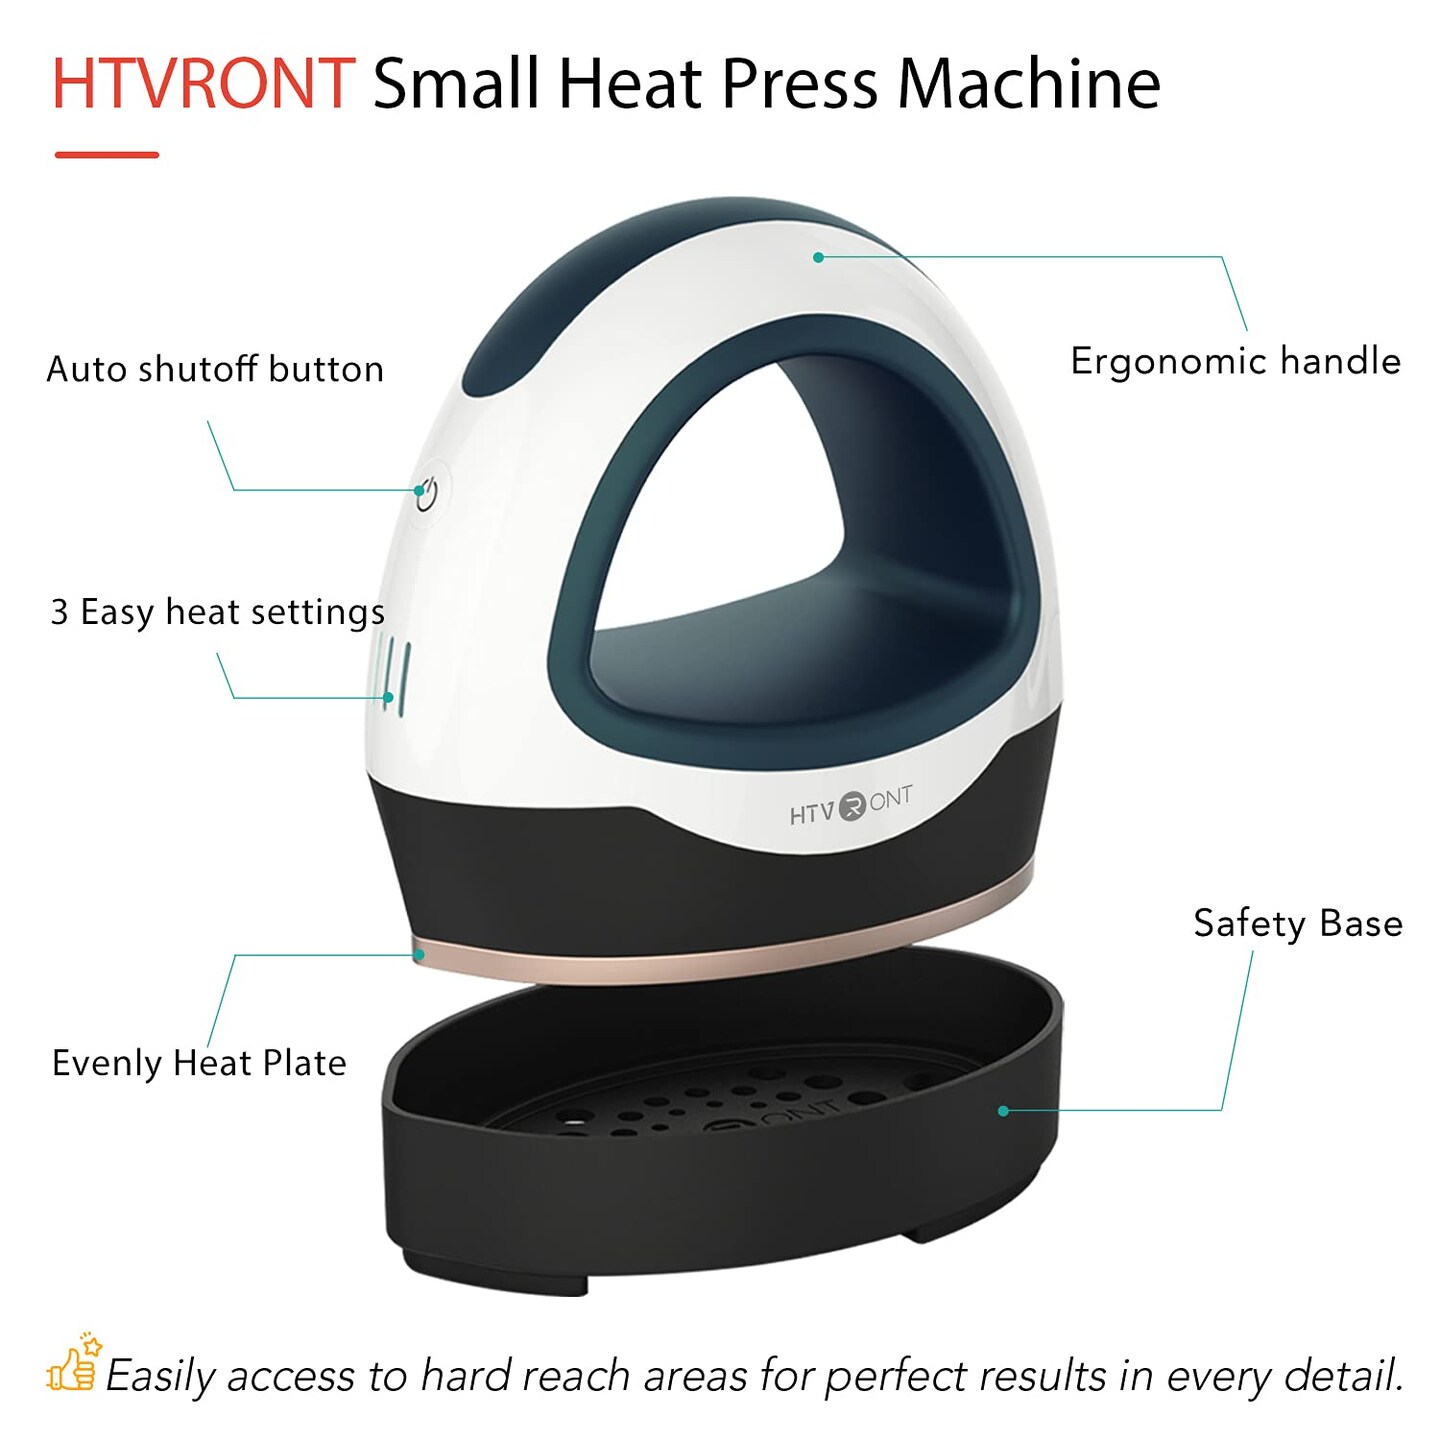 HTVRONT Heat Press Small Heat Press Machine for T Shirts, Small Heat Press Iron Press for Heating Transfer(Dark Green)